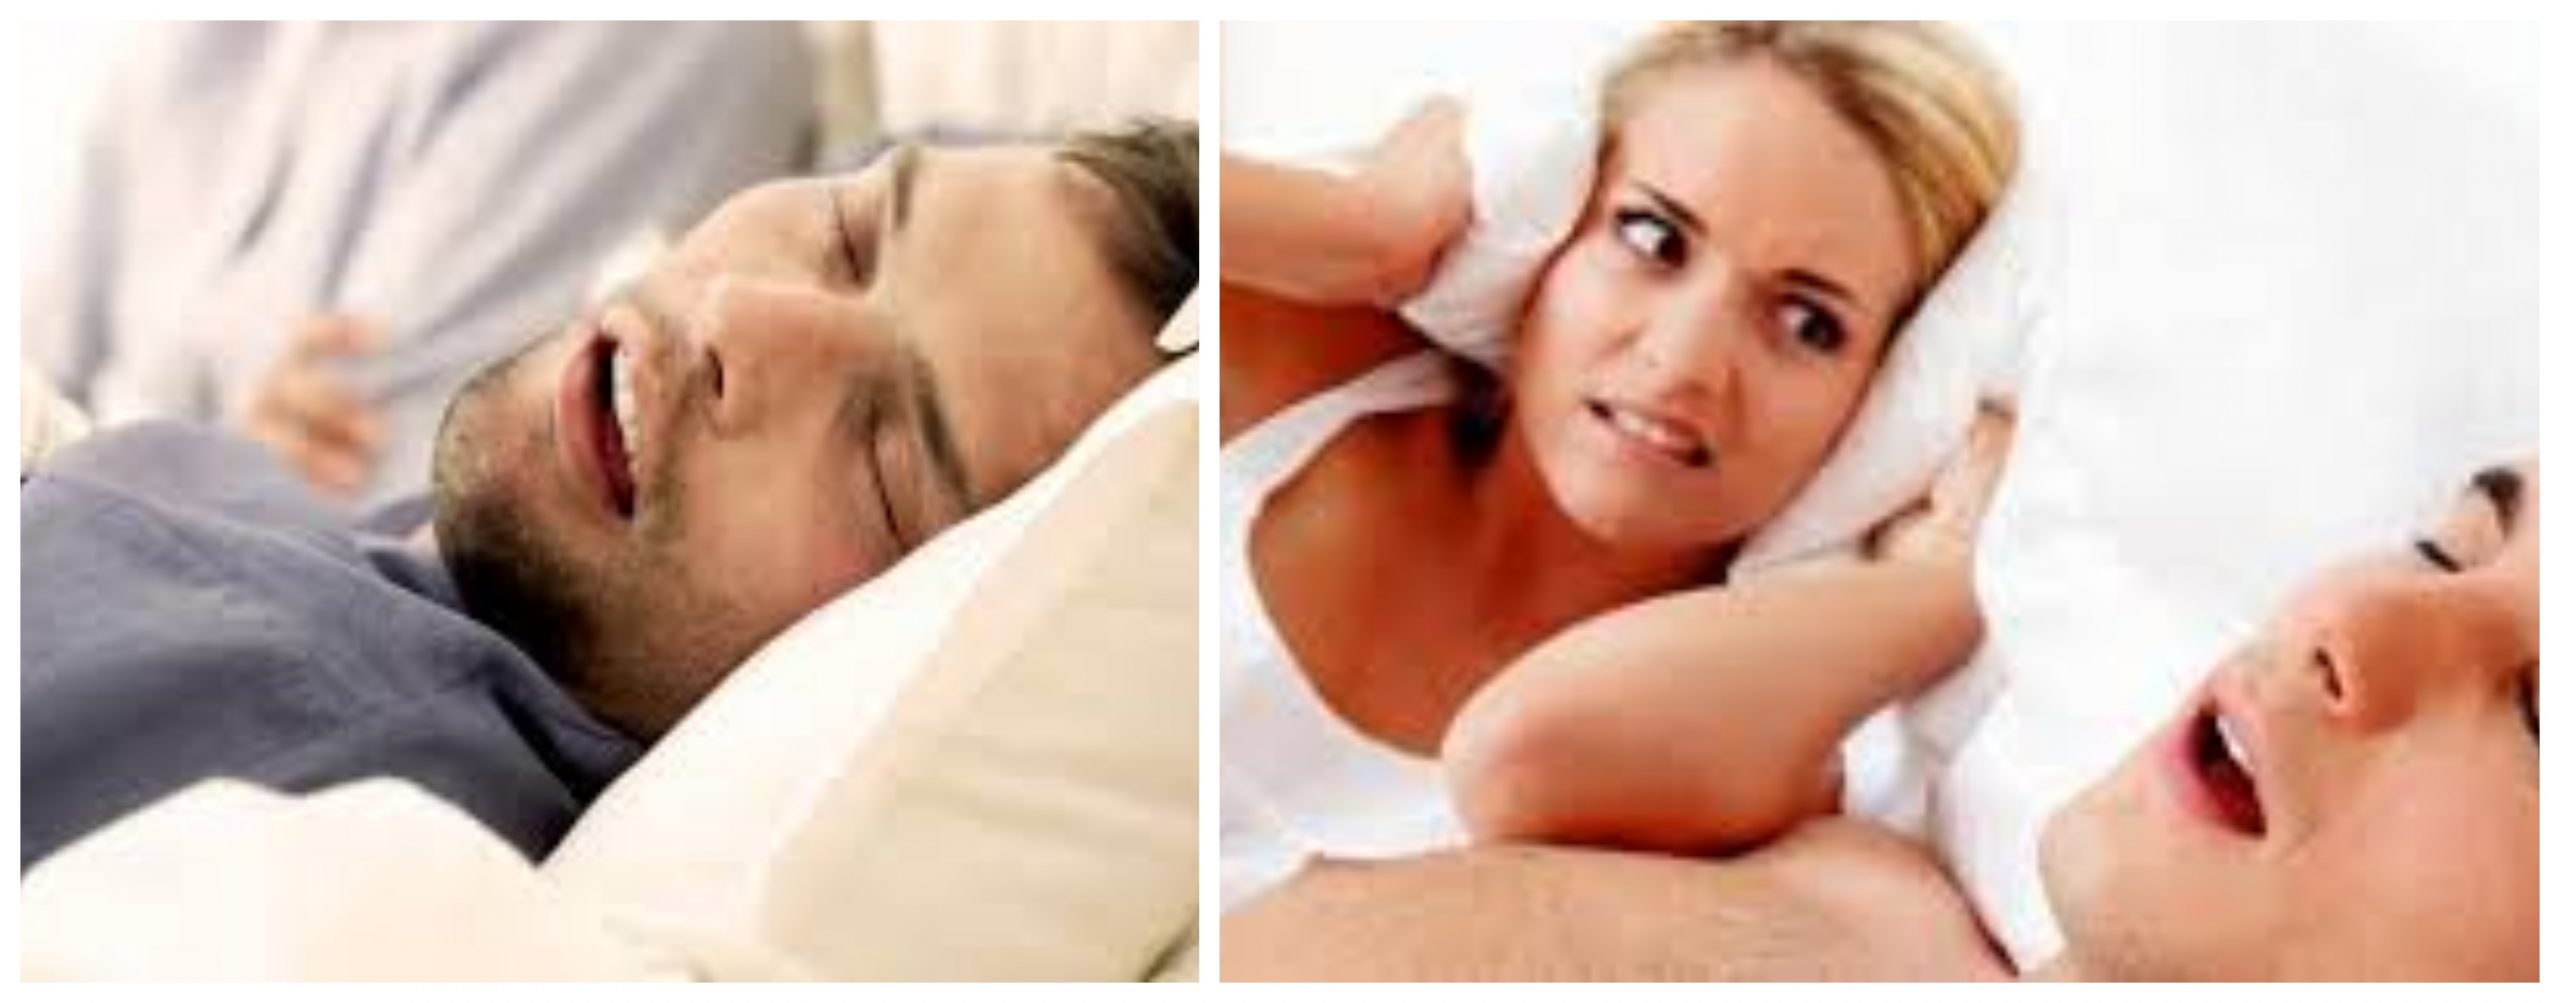 نصائح للتخلص من الشخير أثناء النوم